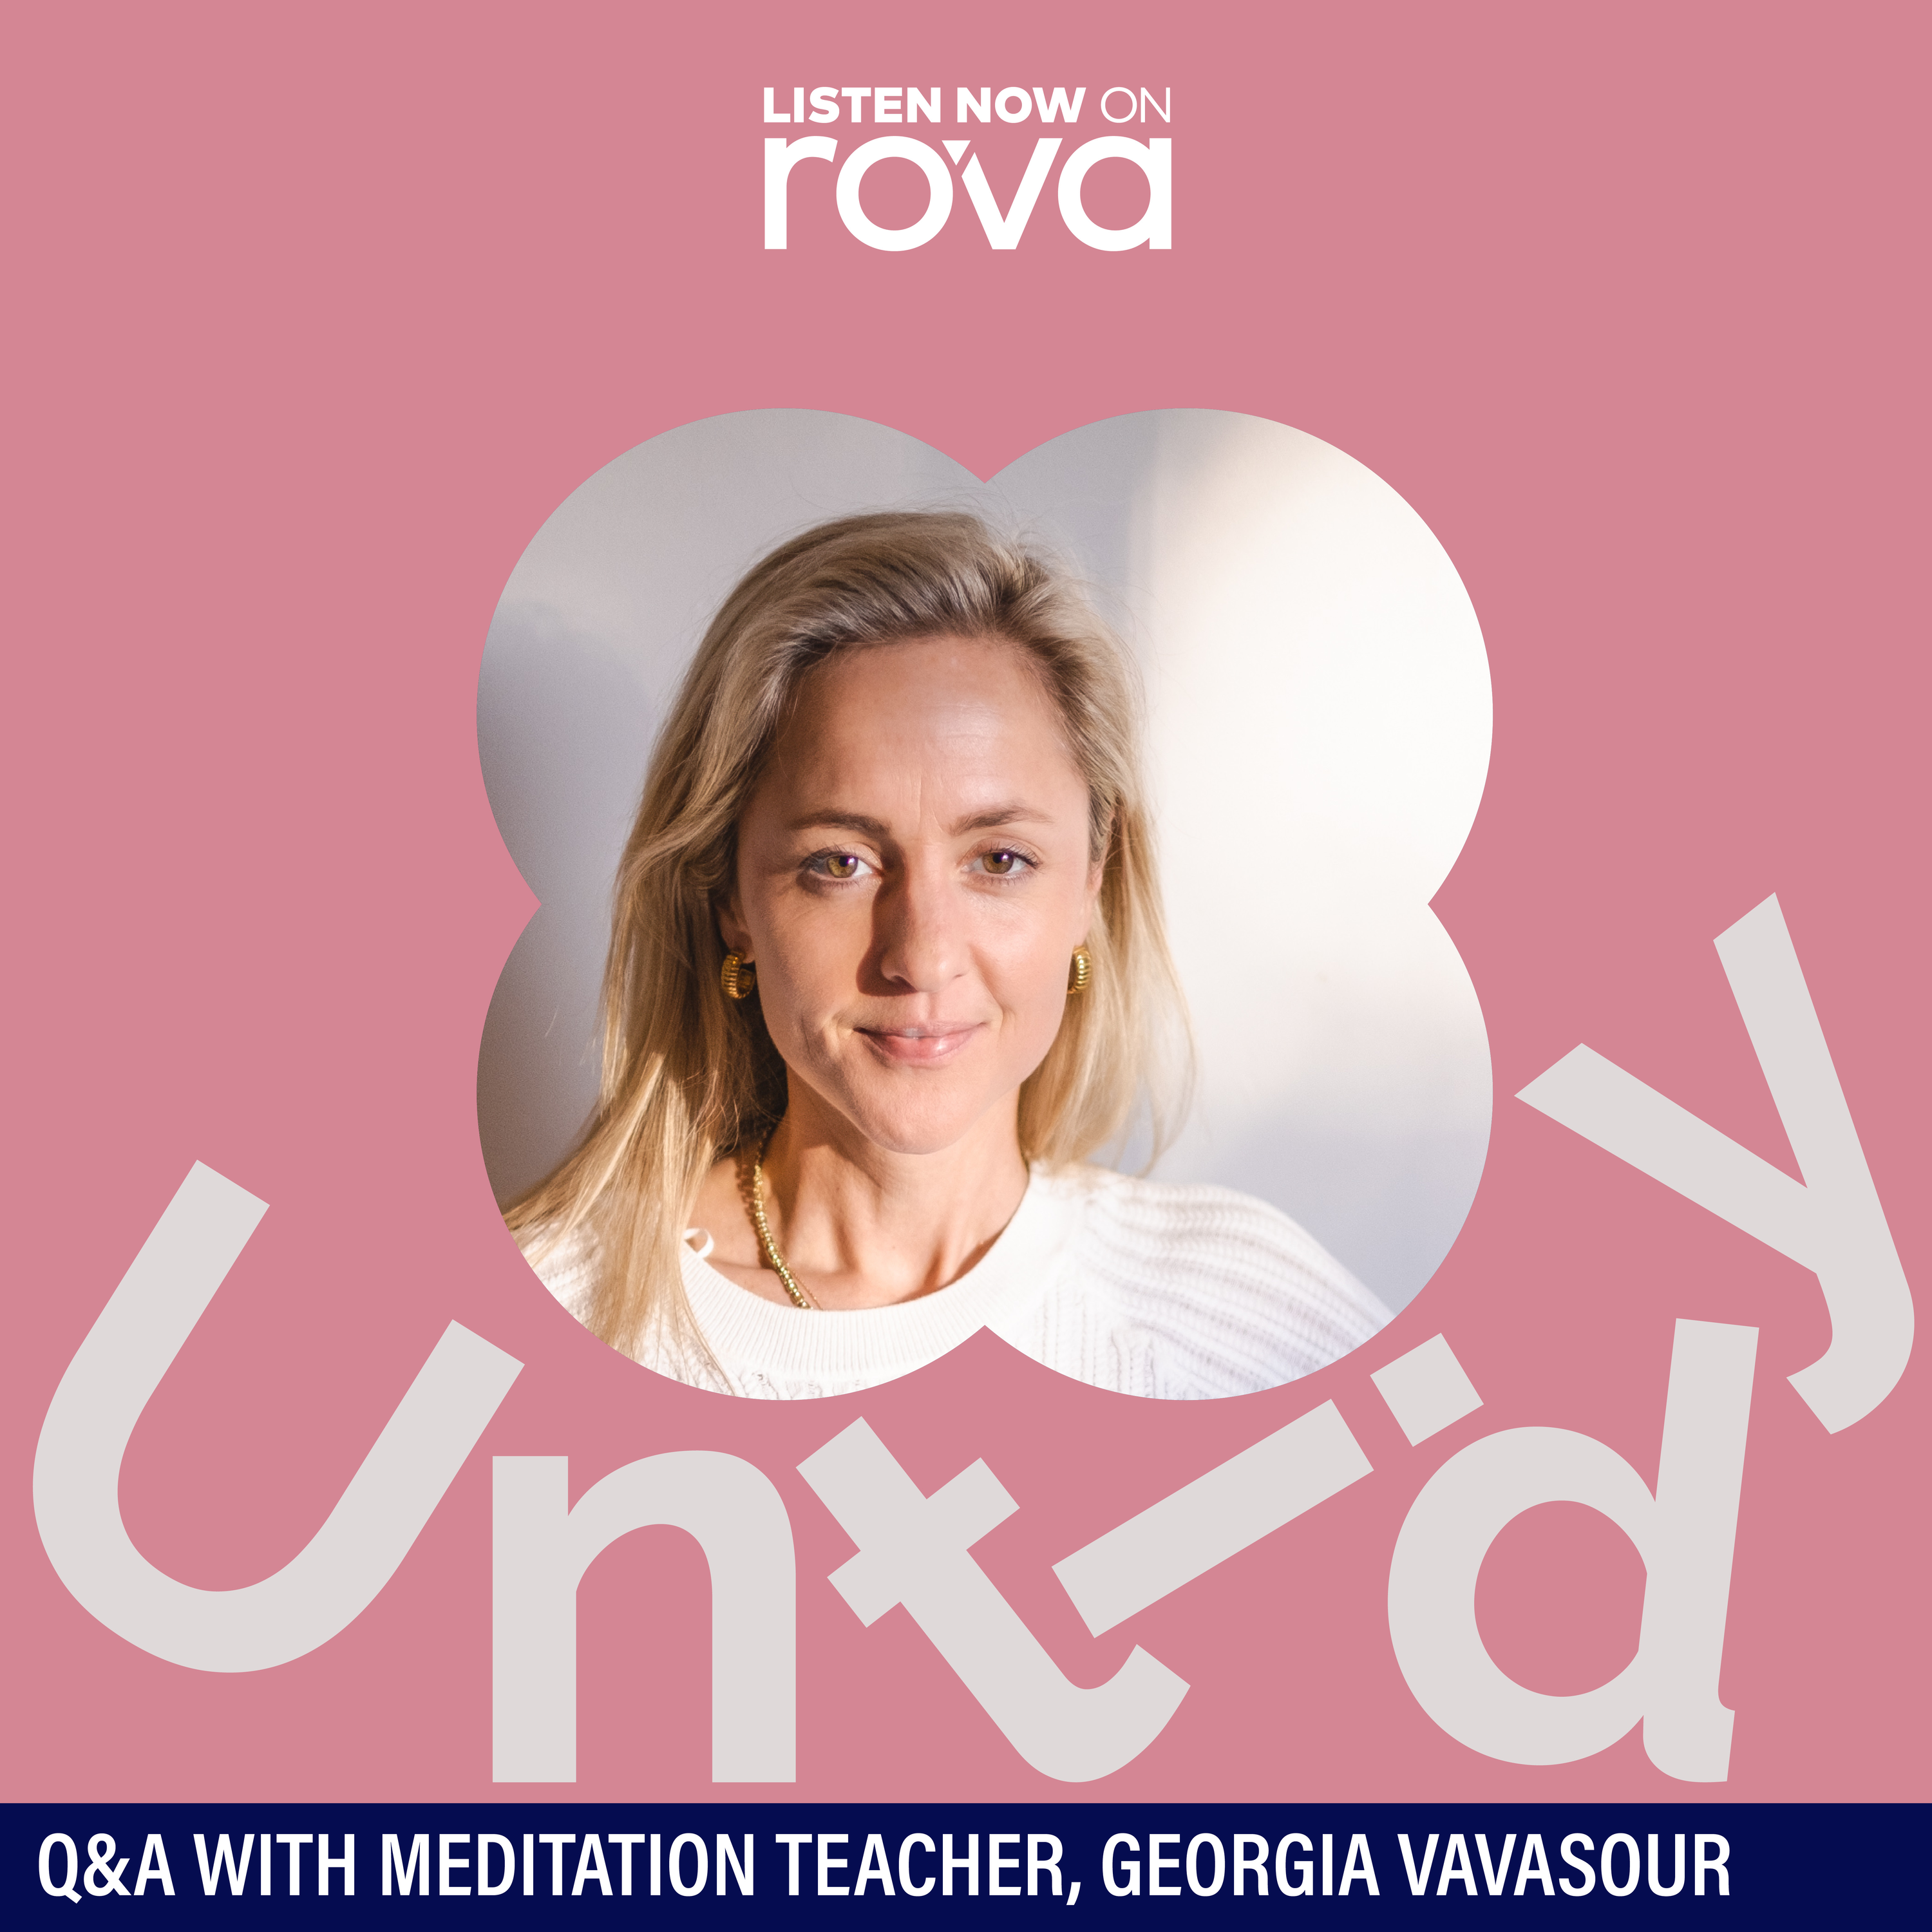 Q&A with meditation teacher, Georgia Vavasour